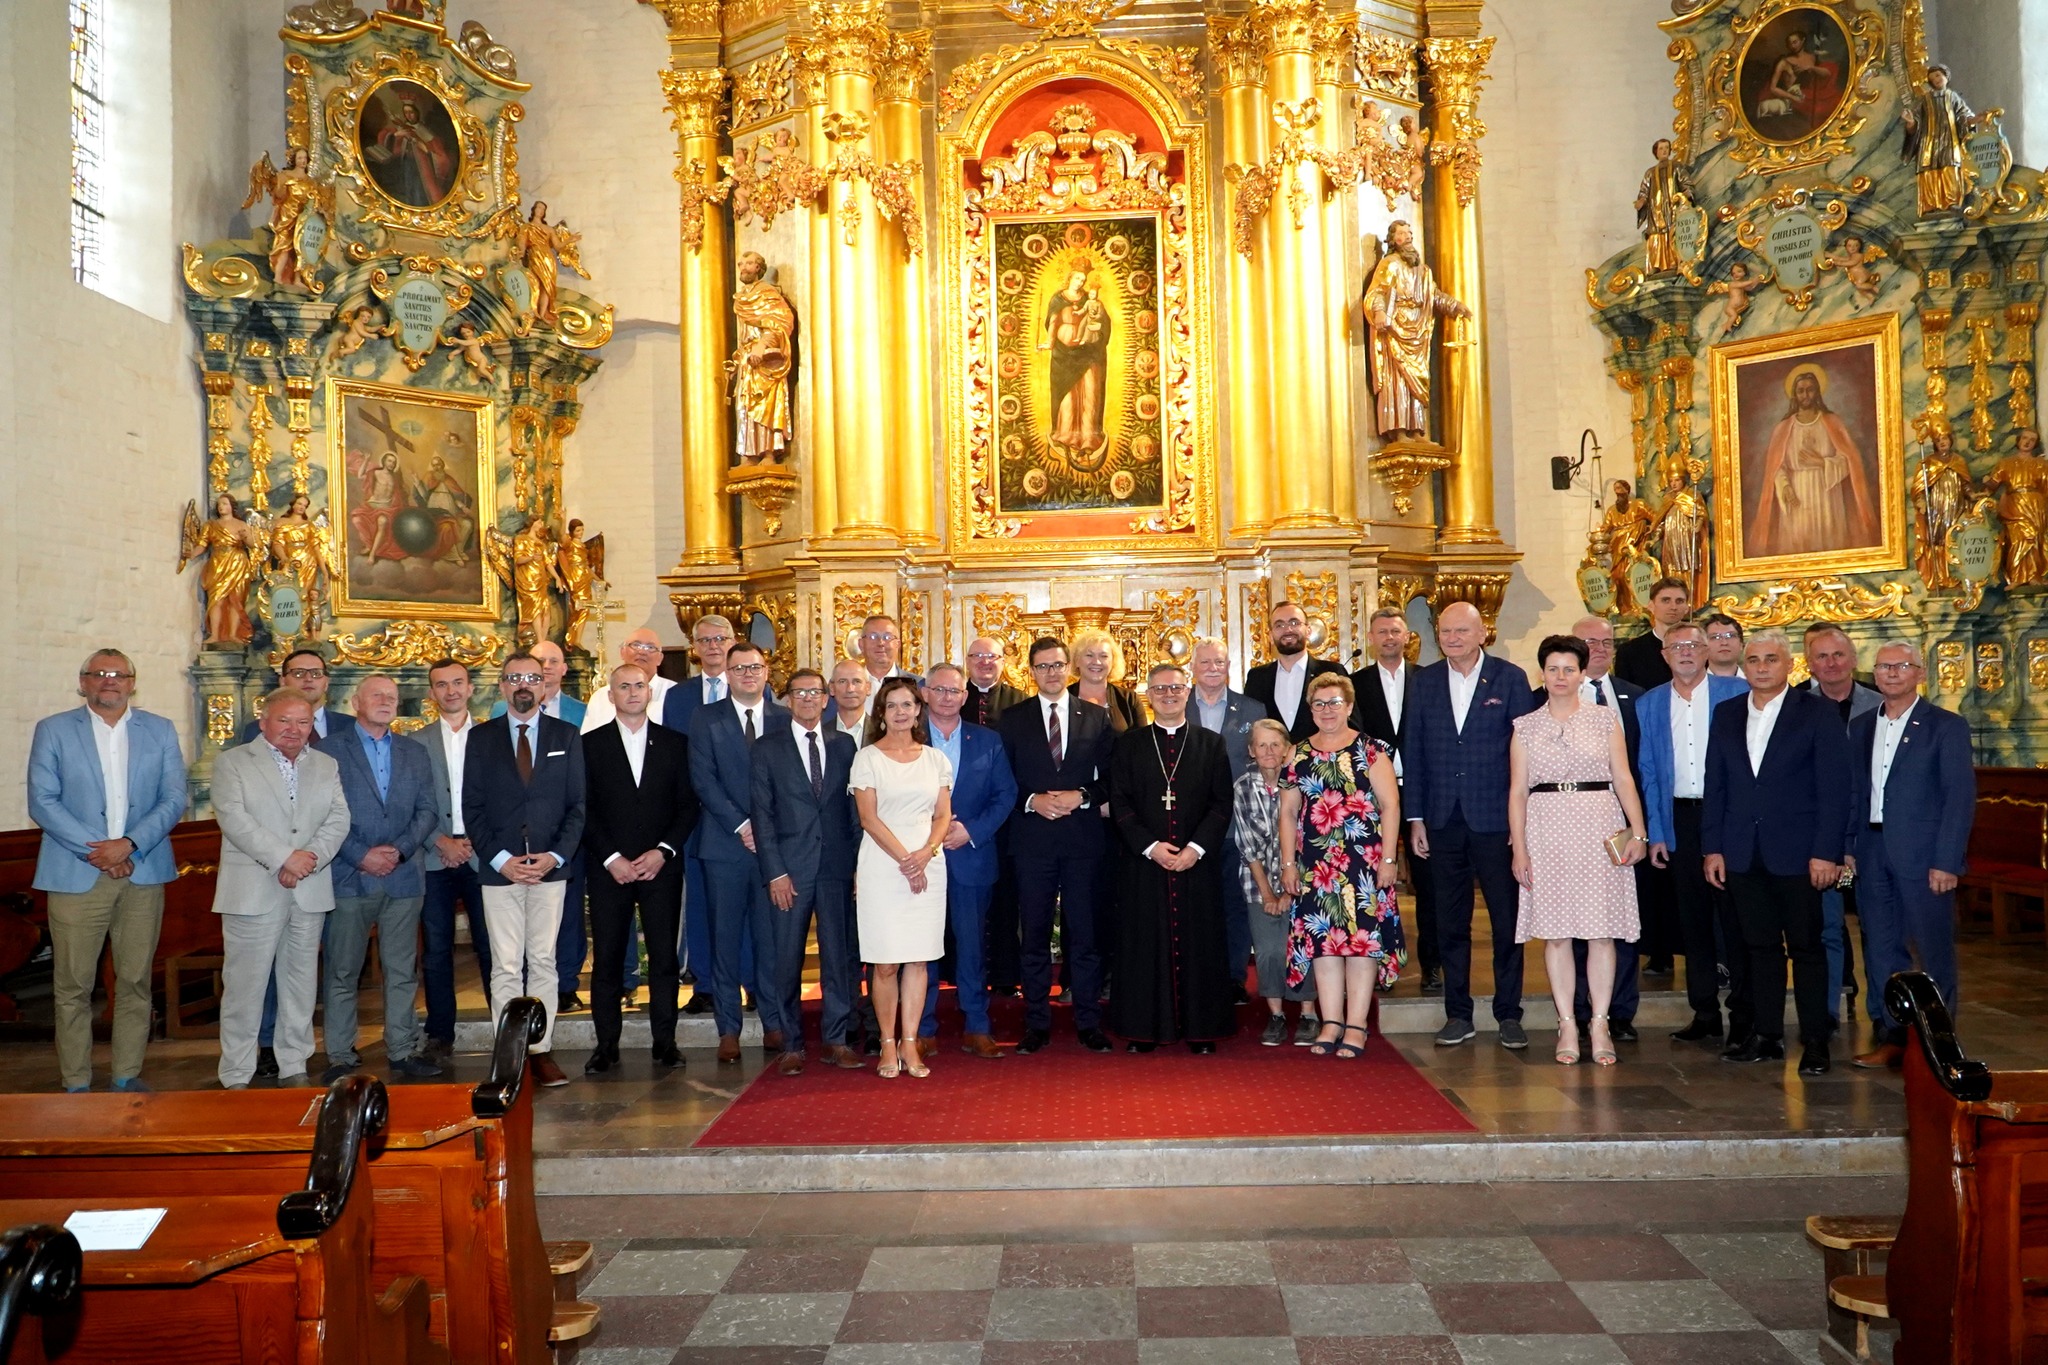 Dzień Skupienia Parlamentarzystów i Samorządowców Diecezji Toruńskiej w Lubawie